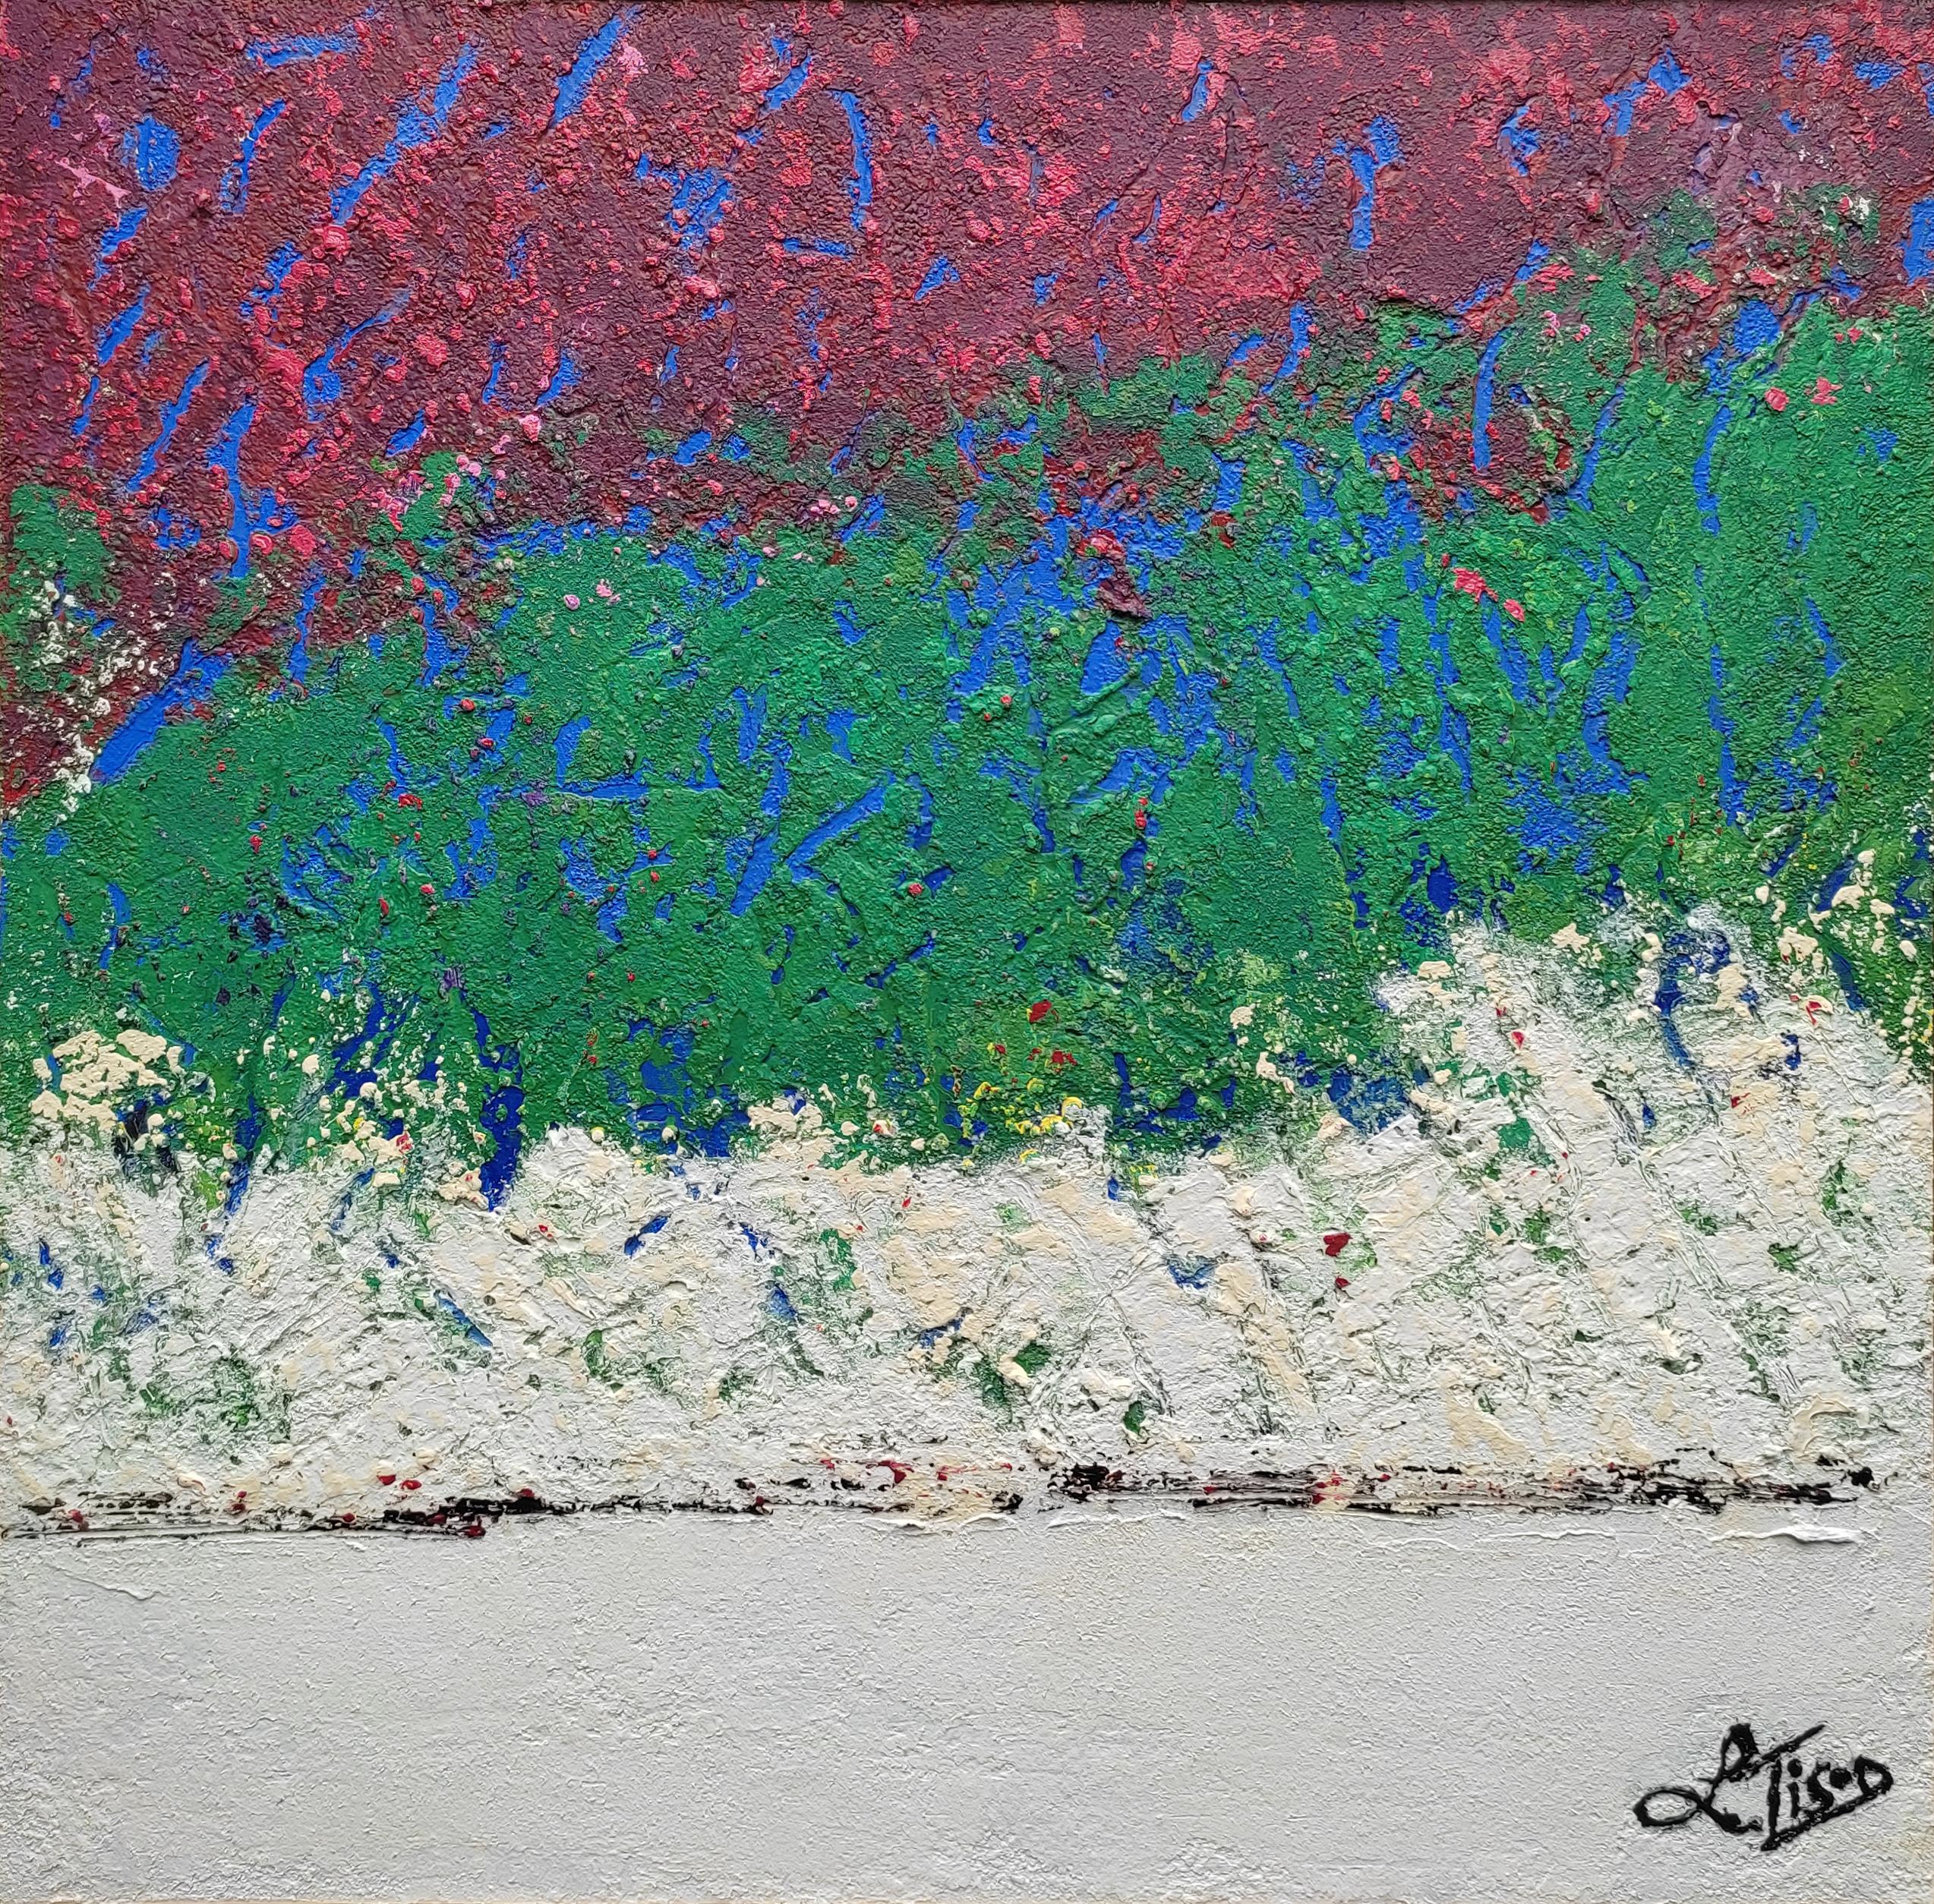 Tison Lionel Abstract Painting – "Shoreline",  Abstrakte Landschaft mit tiefem Relief in Saphirblau, Burgund, Rot, Grün und Beige